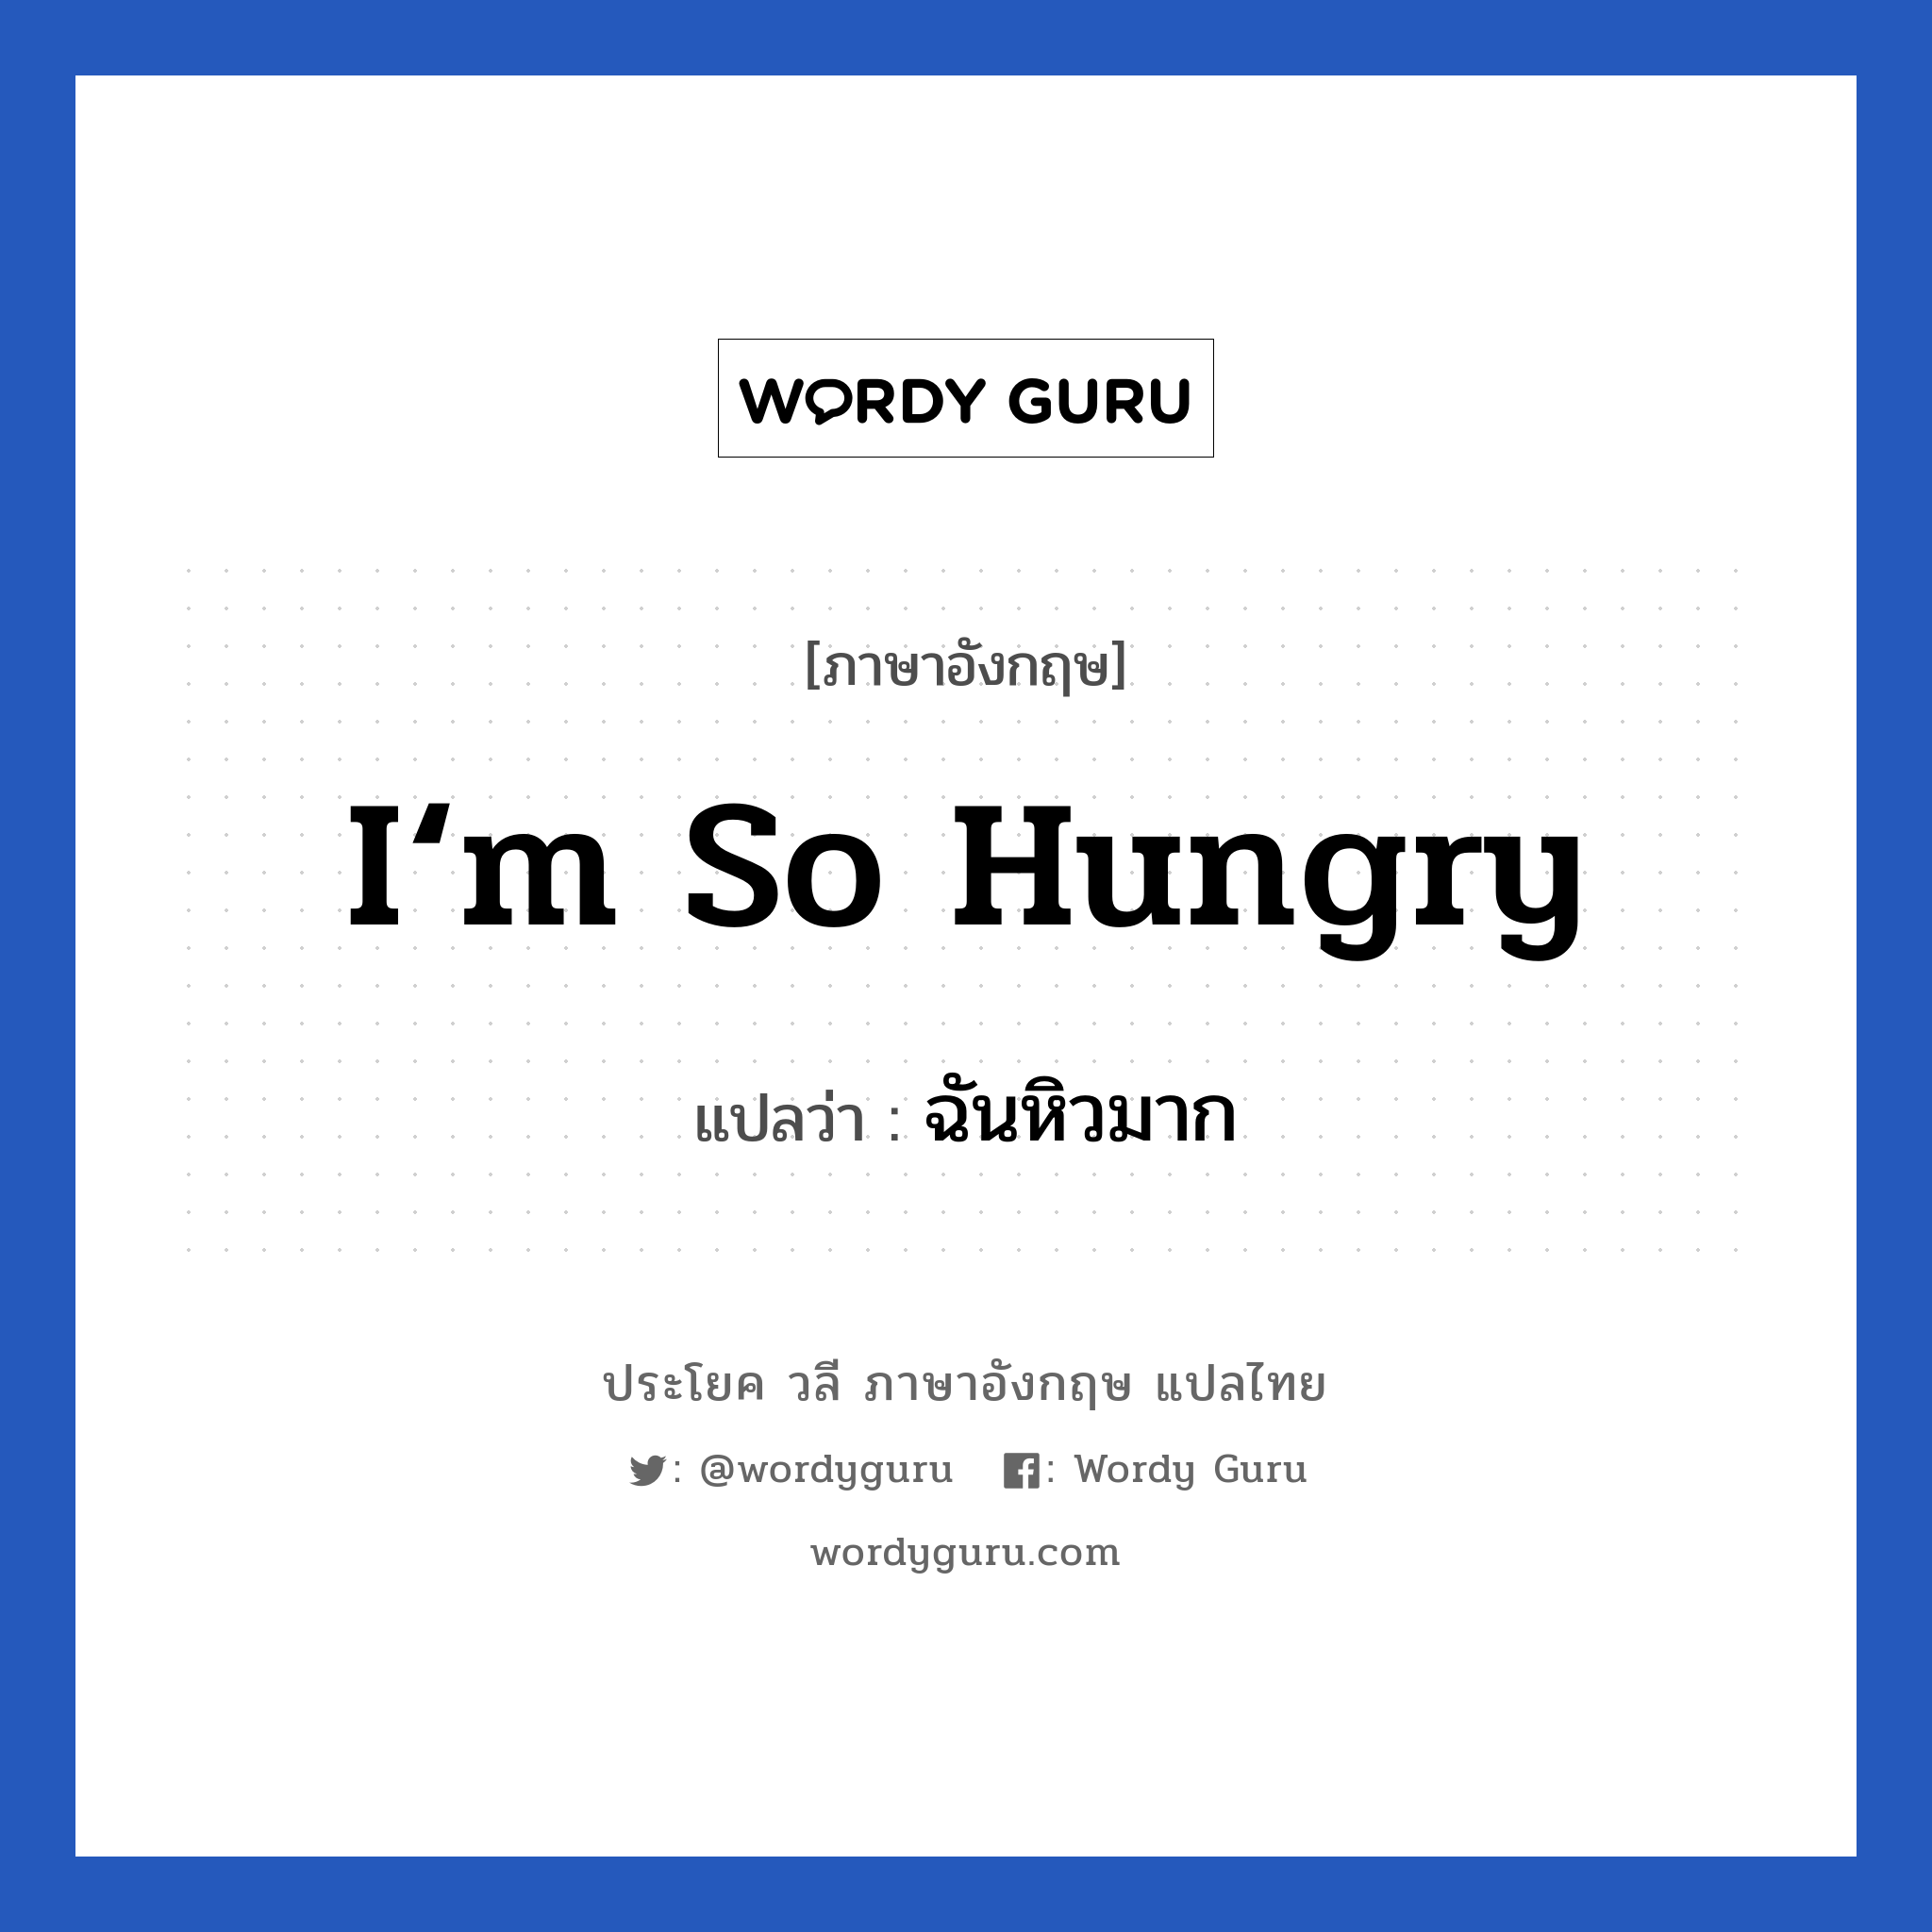 ฉันหิวมาก ภาษาอังกฤษ?, วลีภาษาอังกฤษ ฉันหิวมาก แปลว่า I‘m so hungry